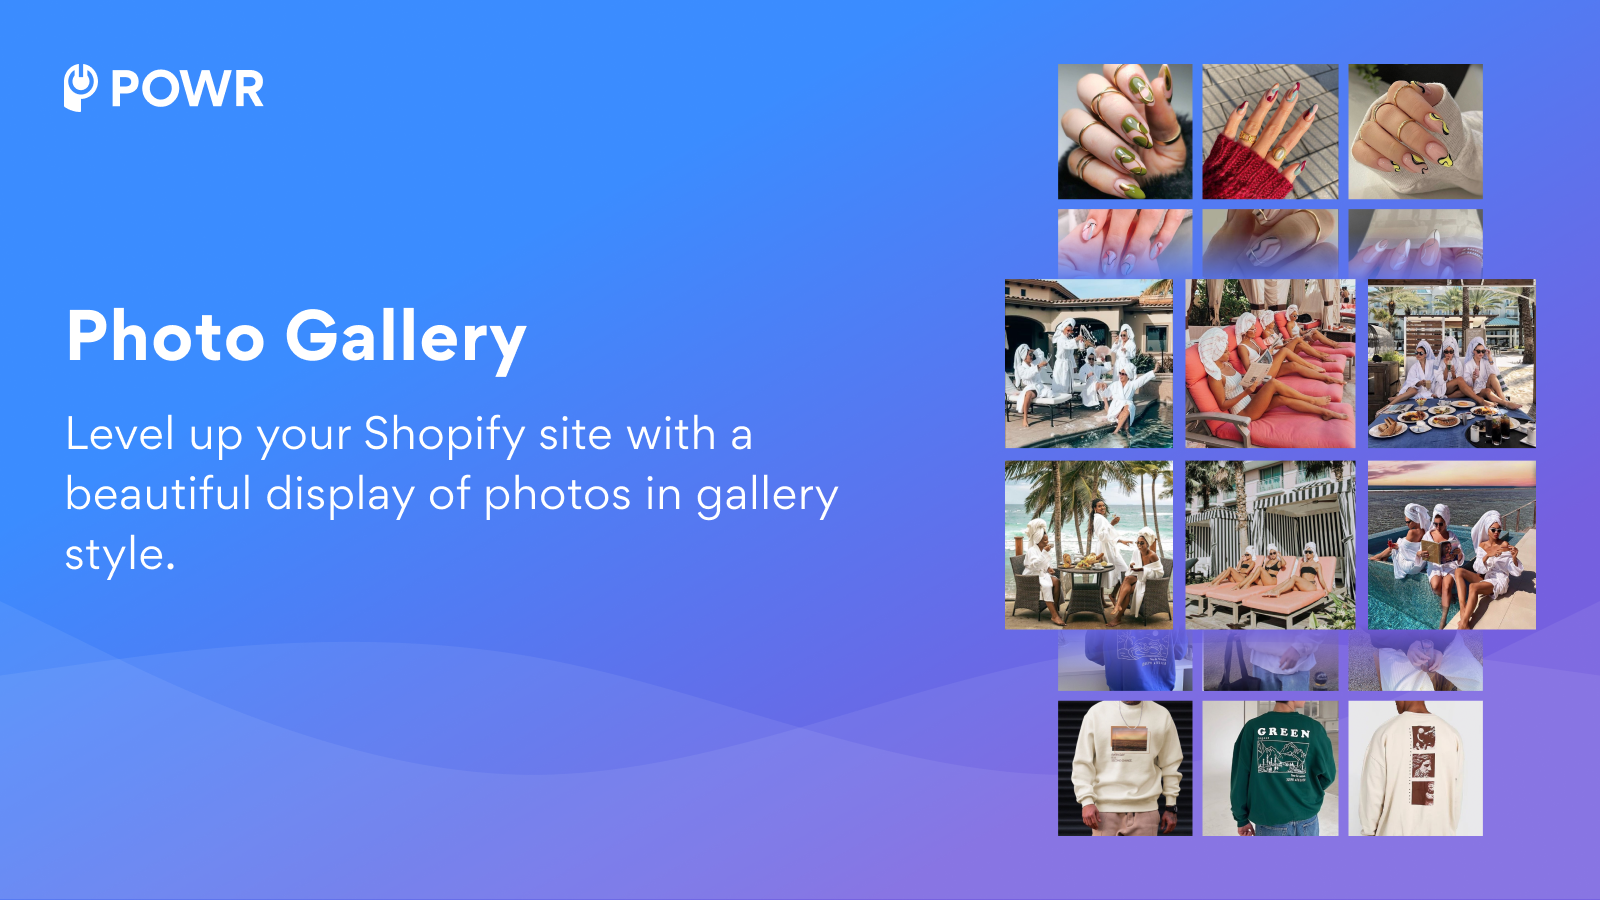 Uppgradera din Shopify-webbplats med en vacker visning av foton i